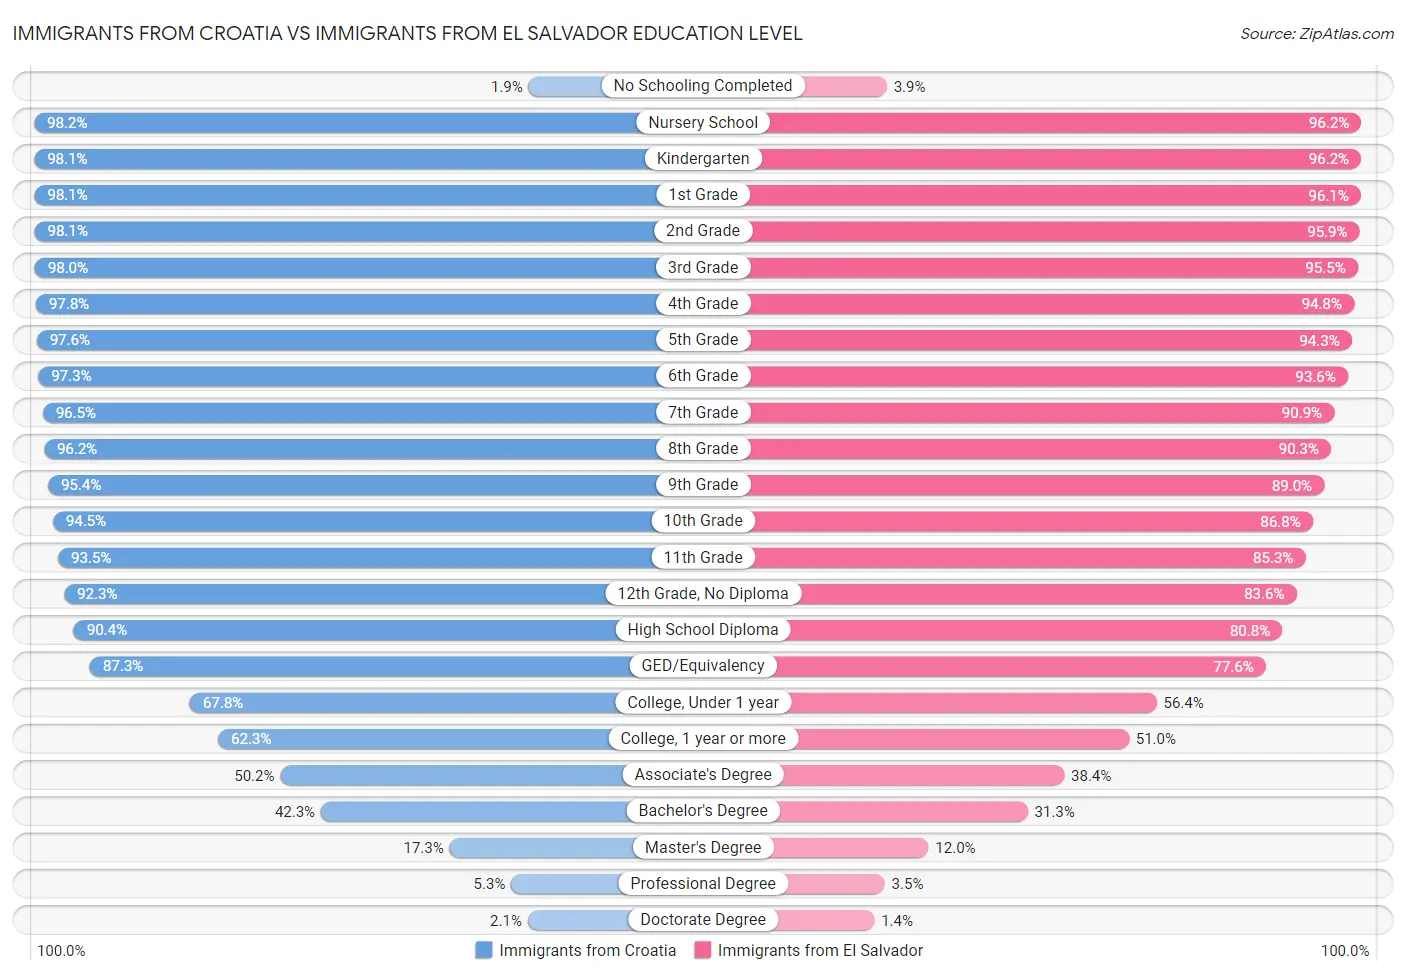 Immigrants from Croatia vs Immigrants from El Salvador Education Level